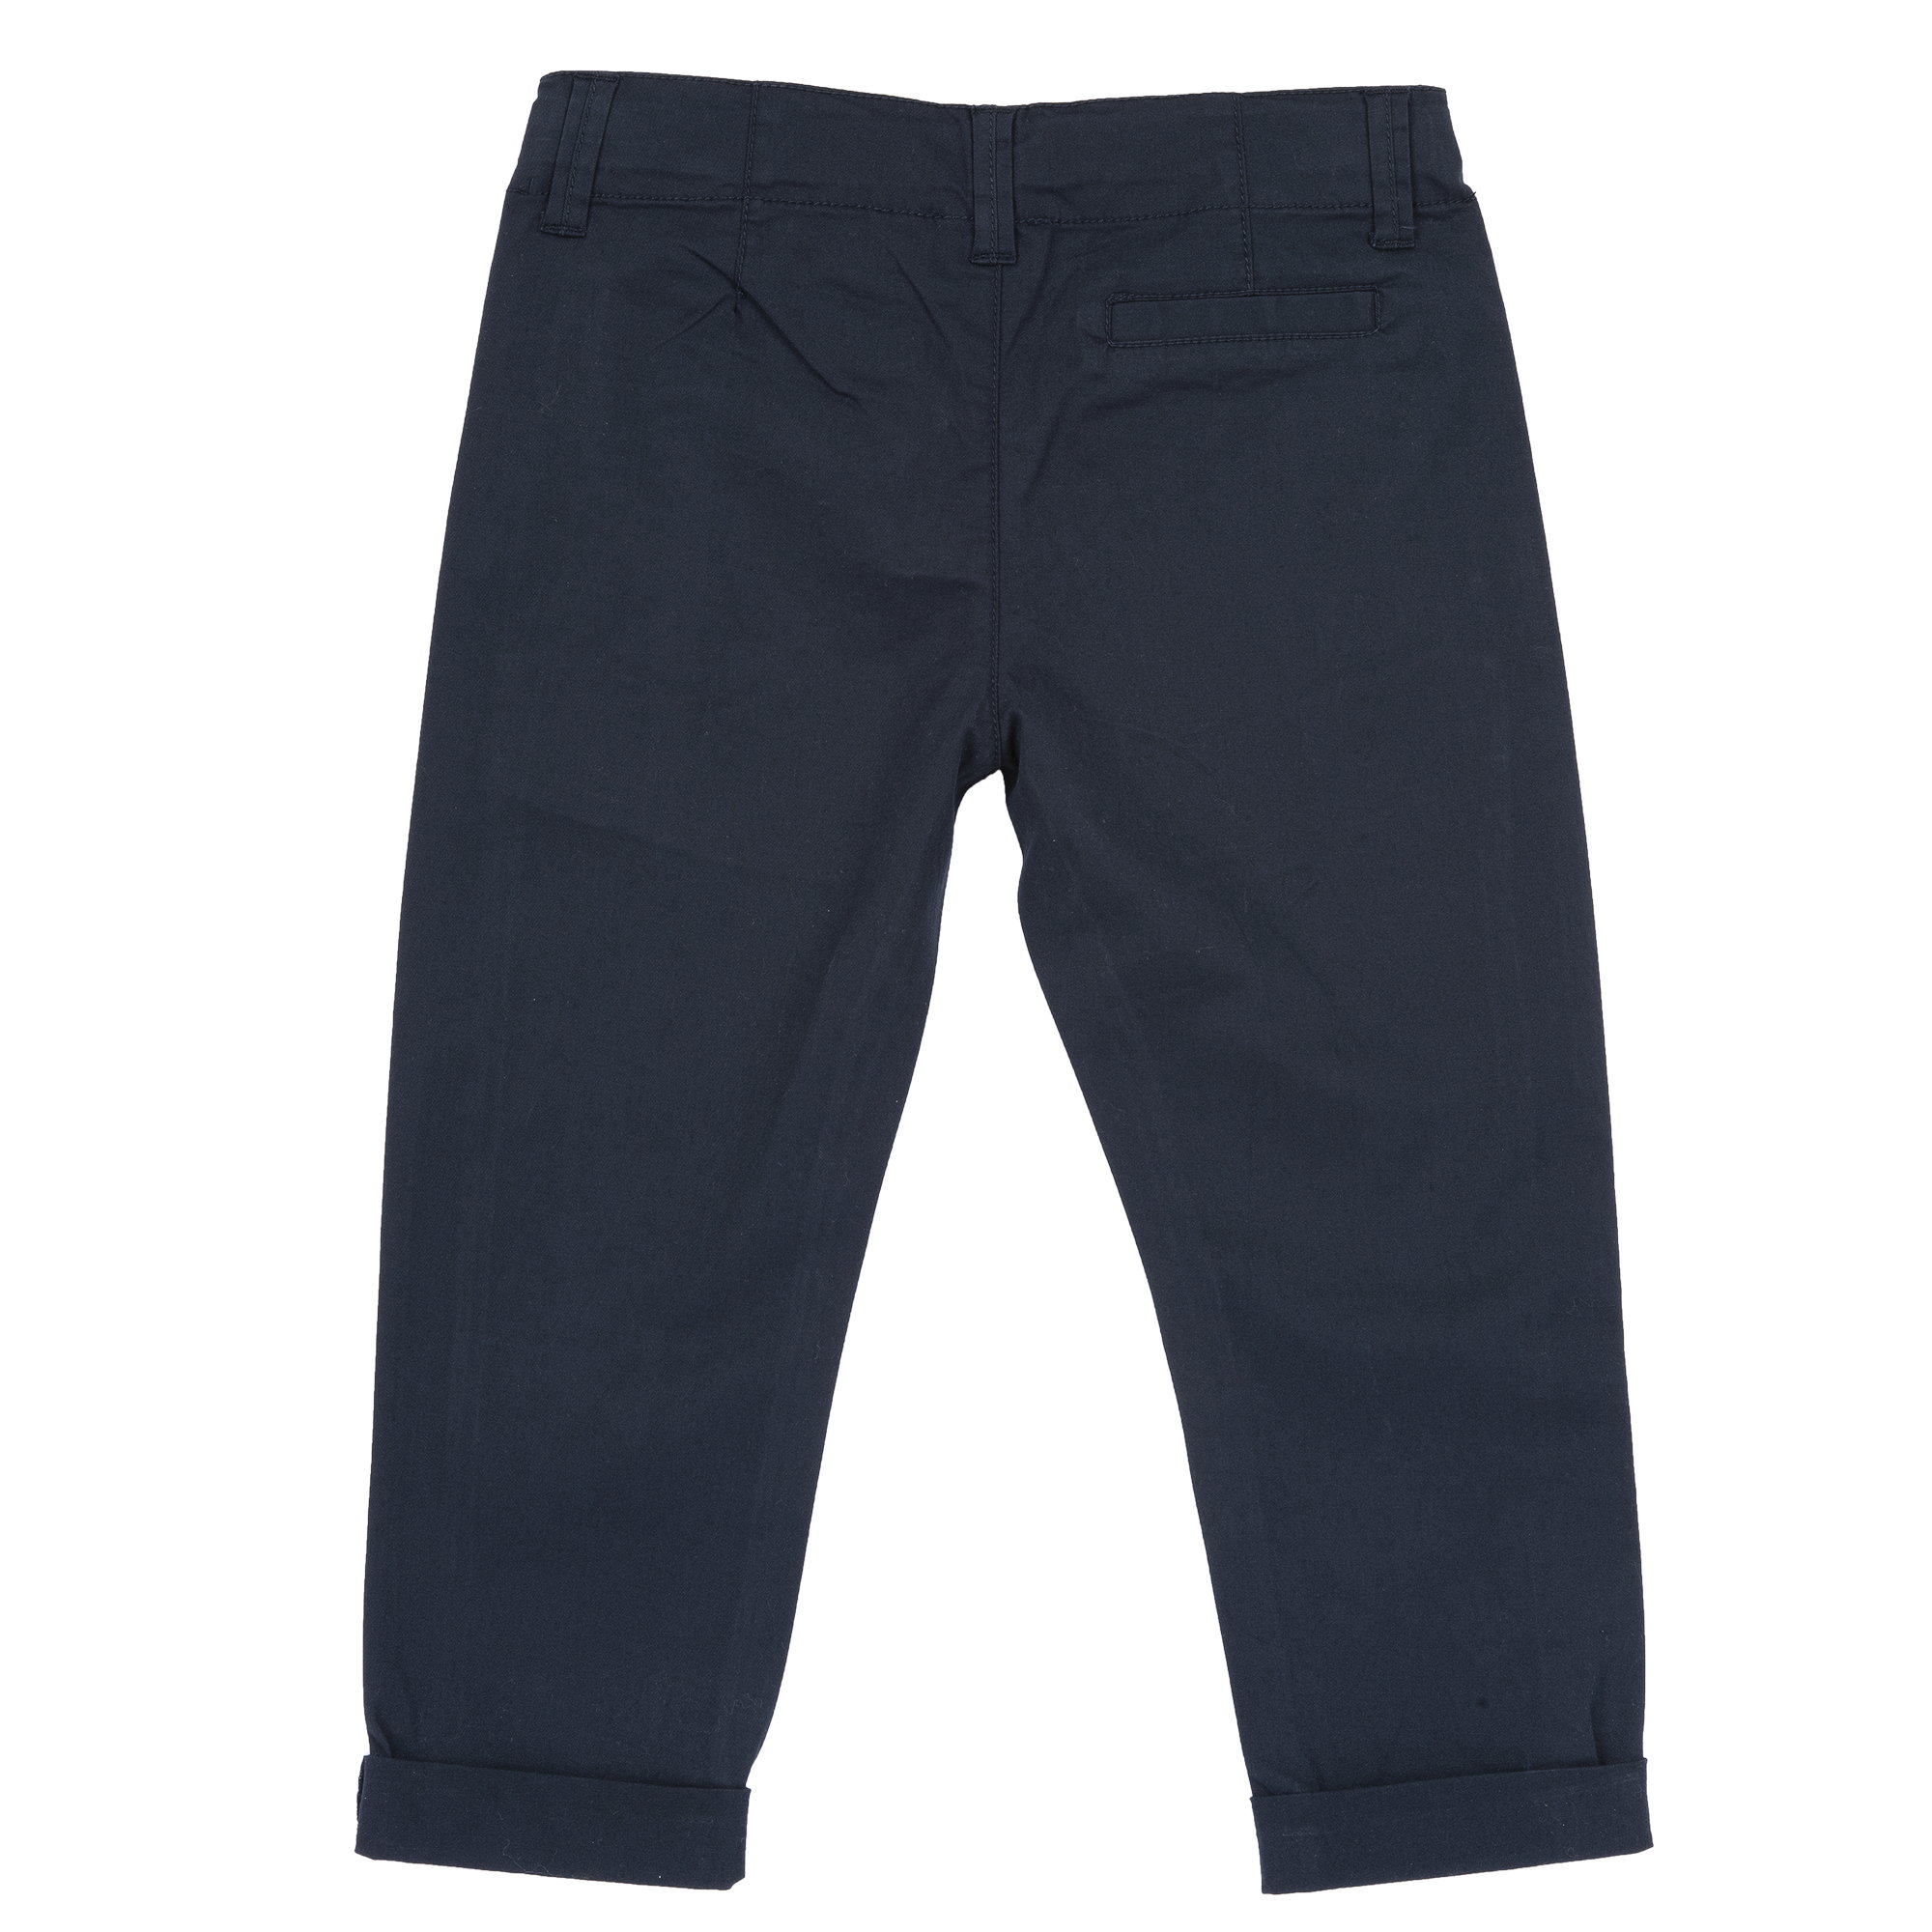 Pantaloni Copii Chicco, Albastru Inchis, 05645-66mc